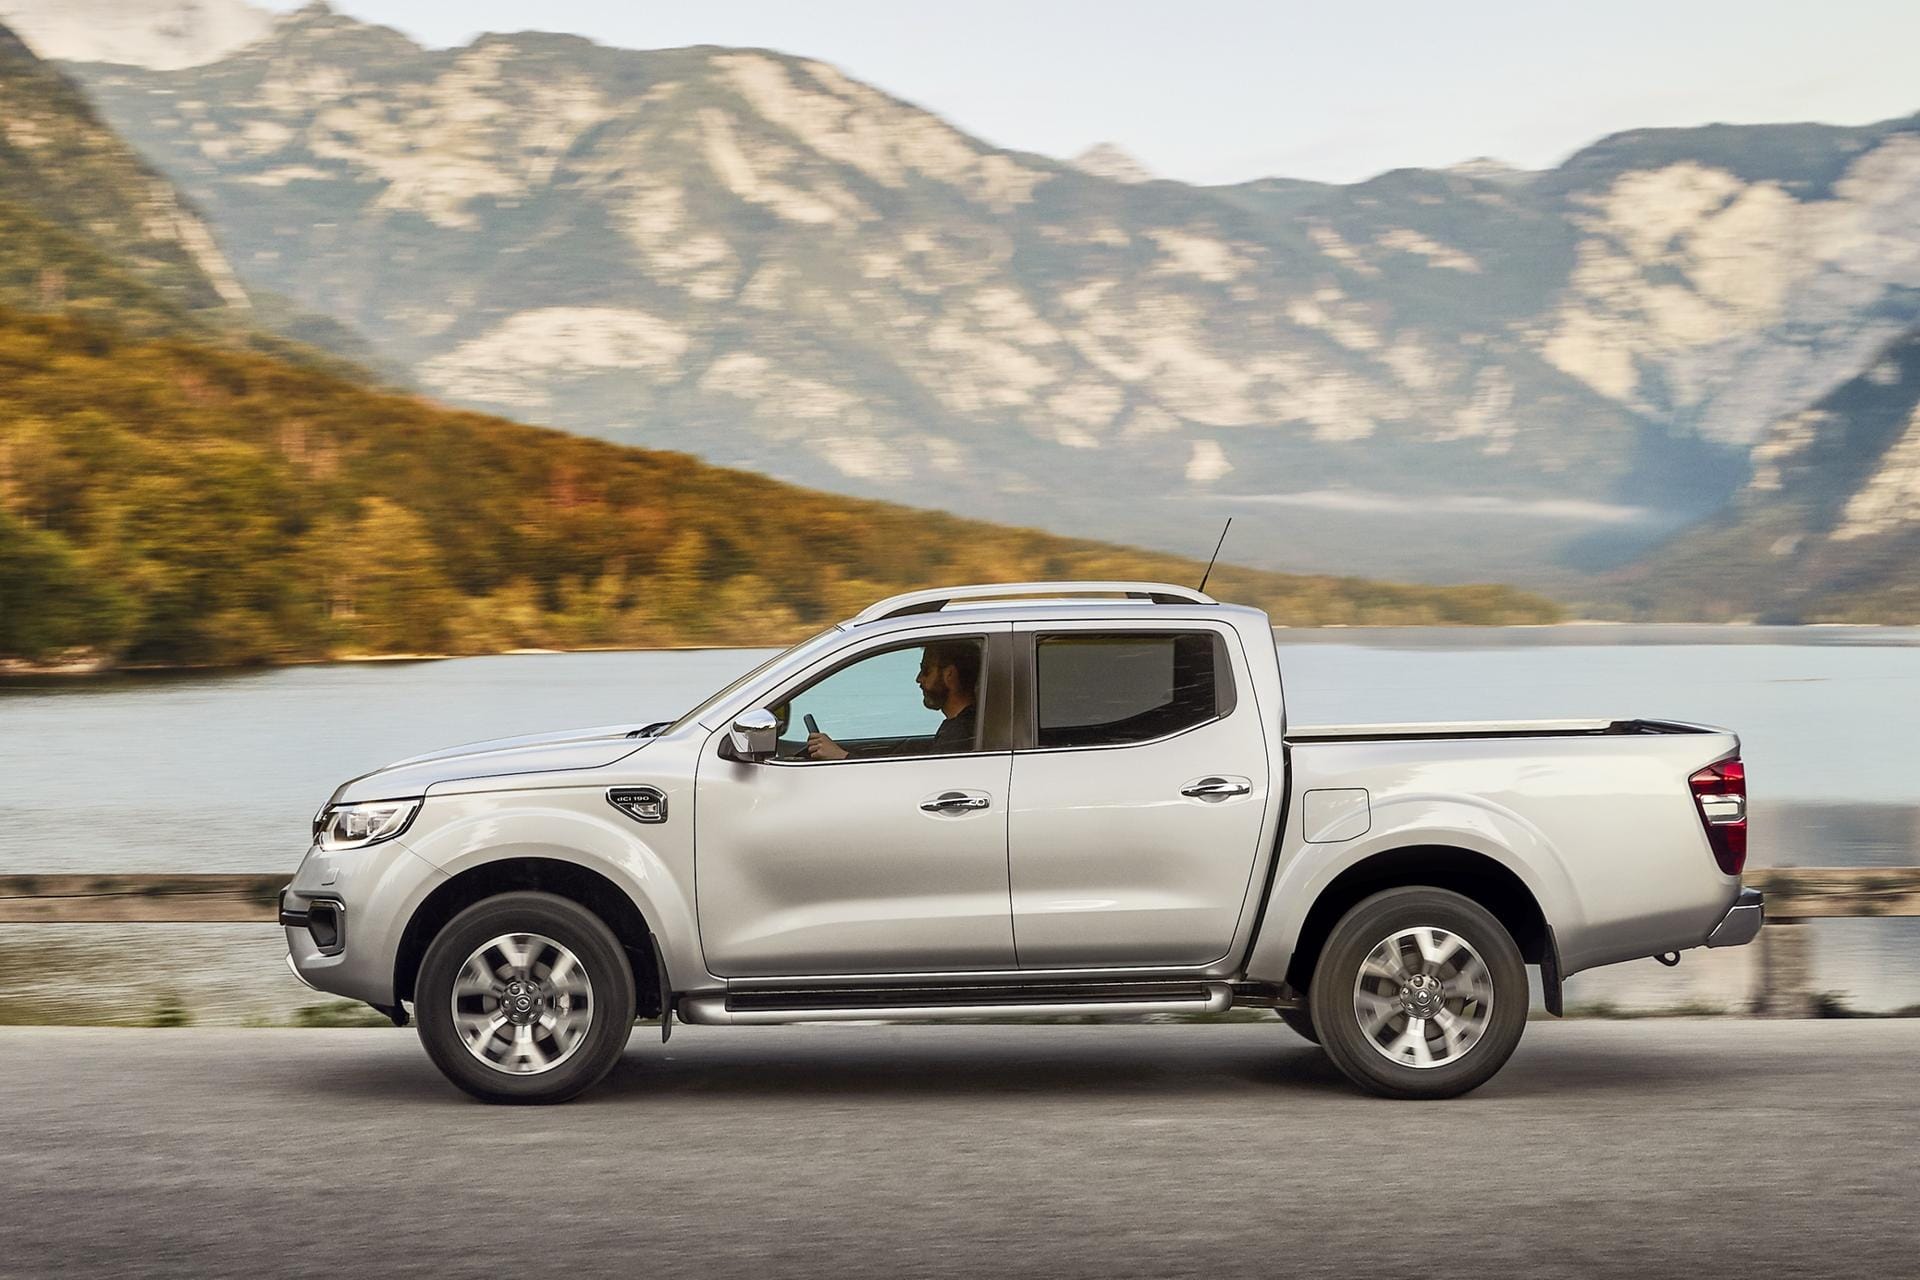 Neuer Lastesel: Mit dem Alaskan hat nun auch Renault einen Pick-up im Angebot.